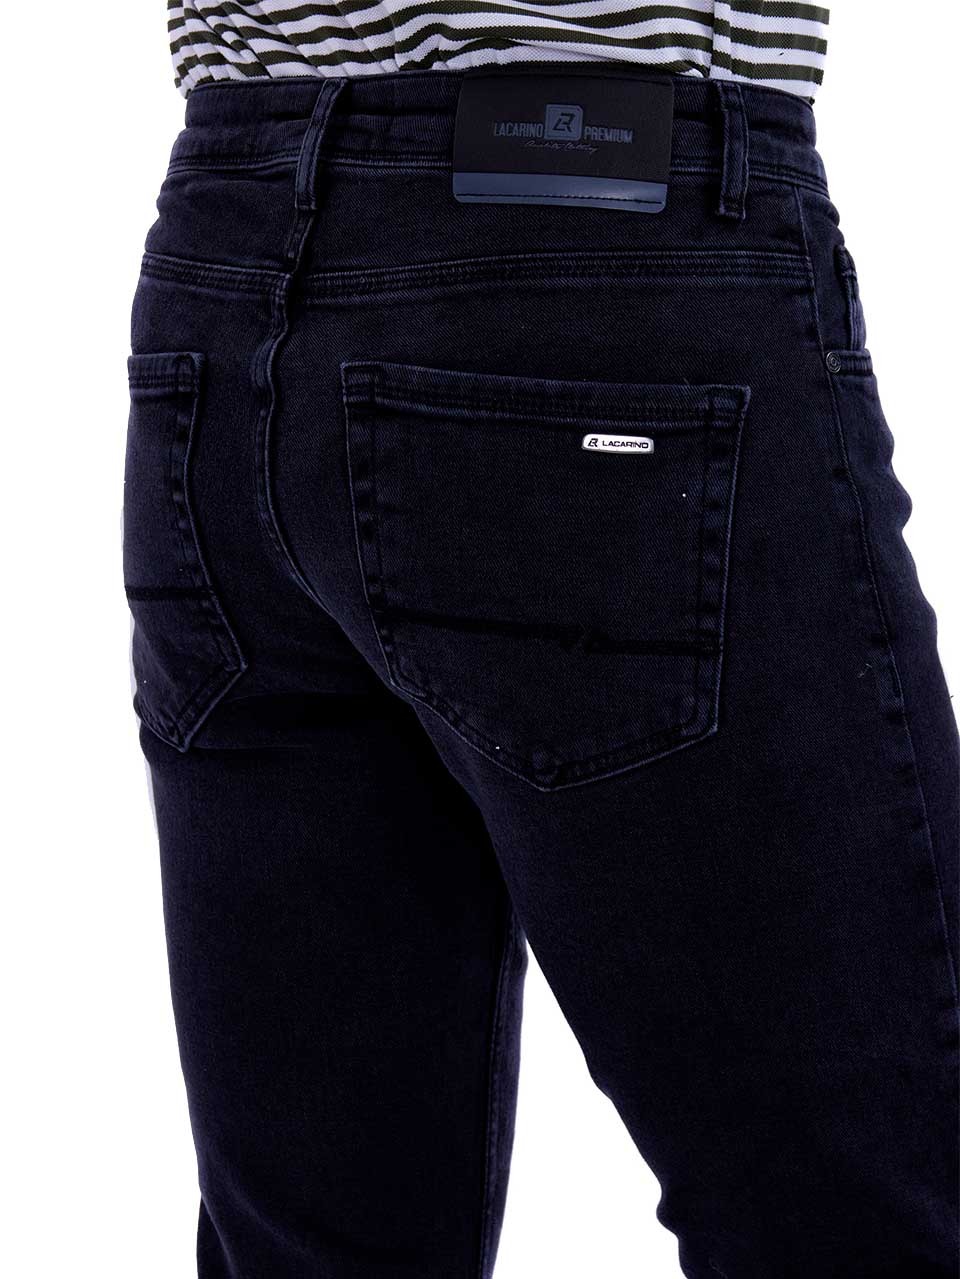 Regular men's jeans Black